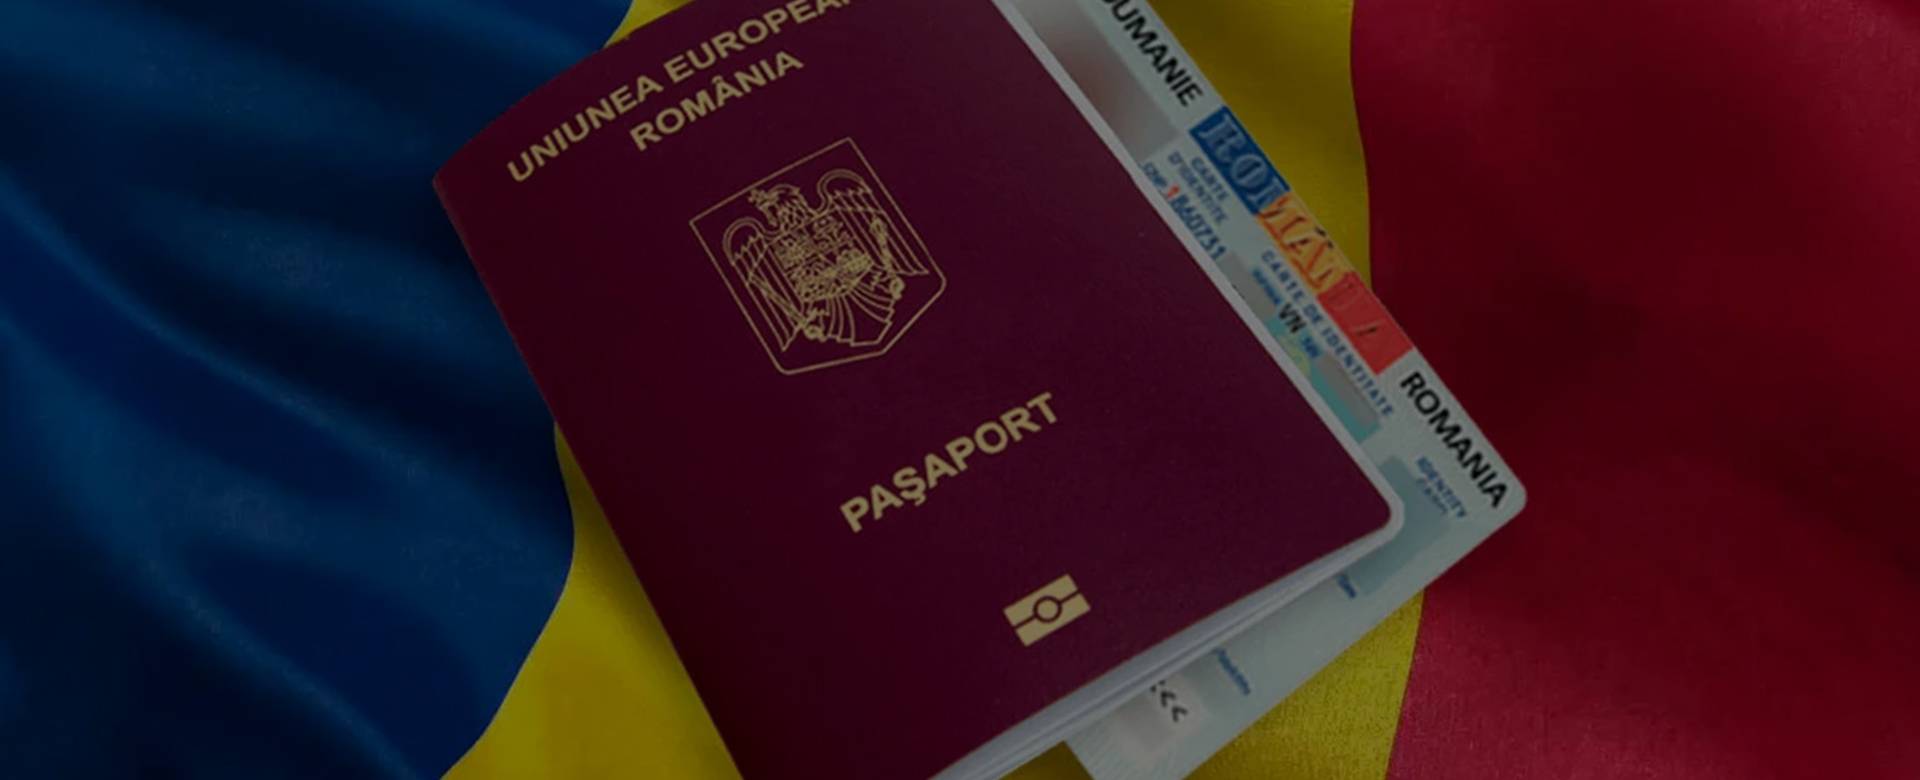 Воссоединение семьи в чехии в 2021 году: документы, виза, внж